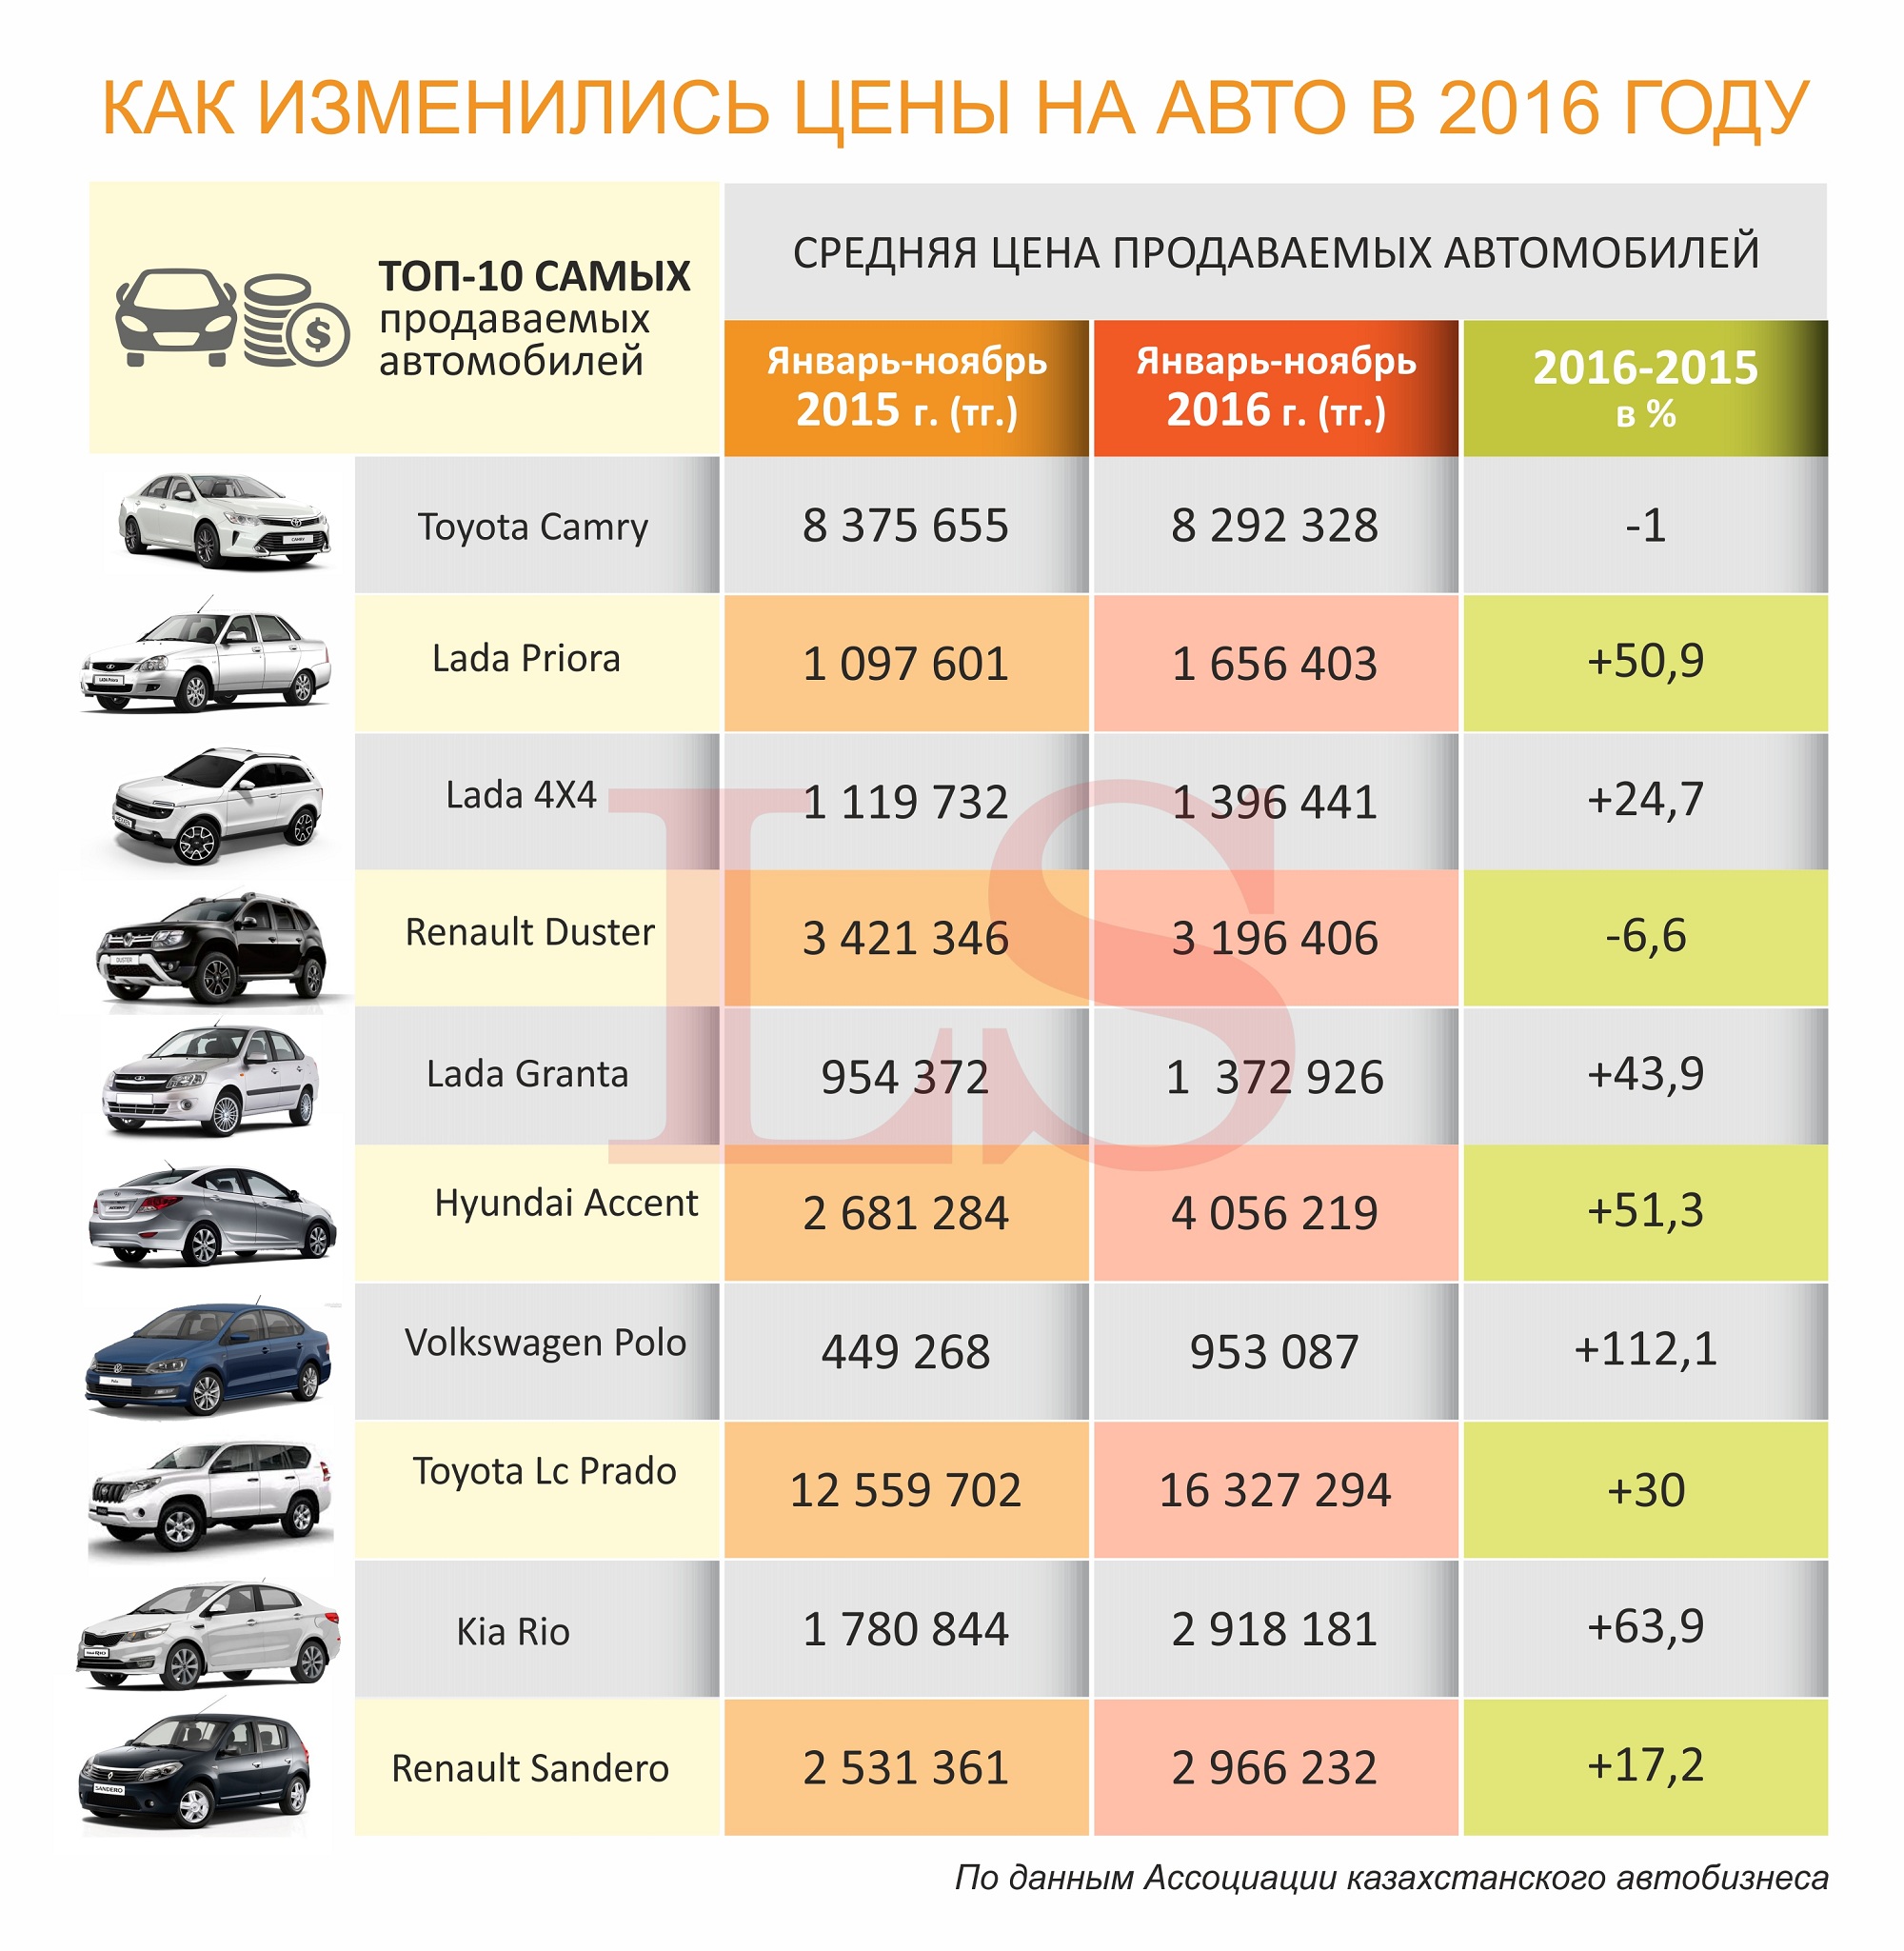 цены на машины в 2015 году